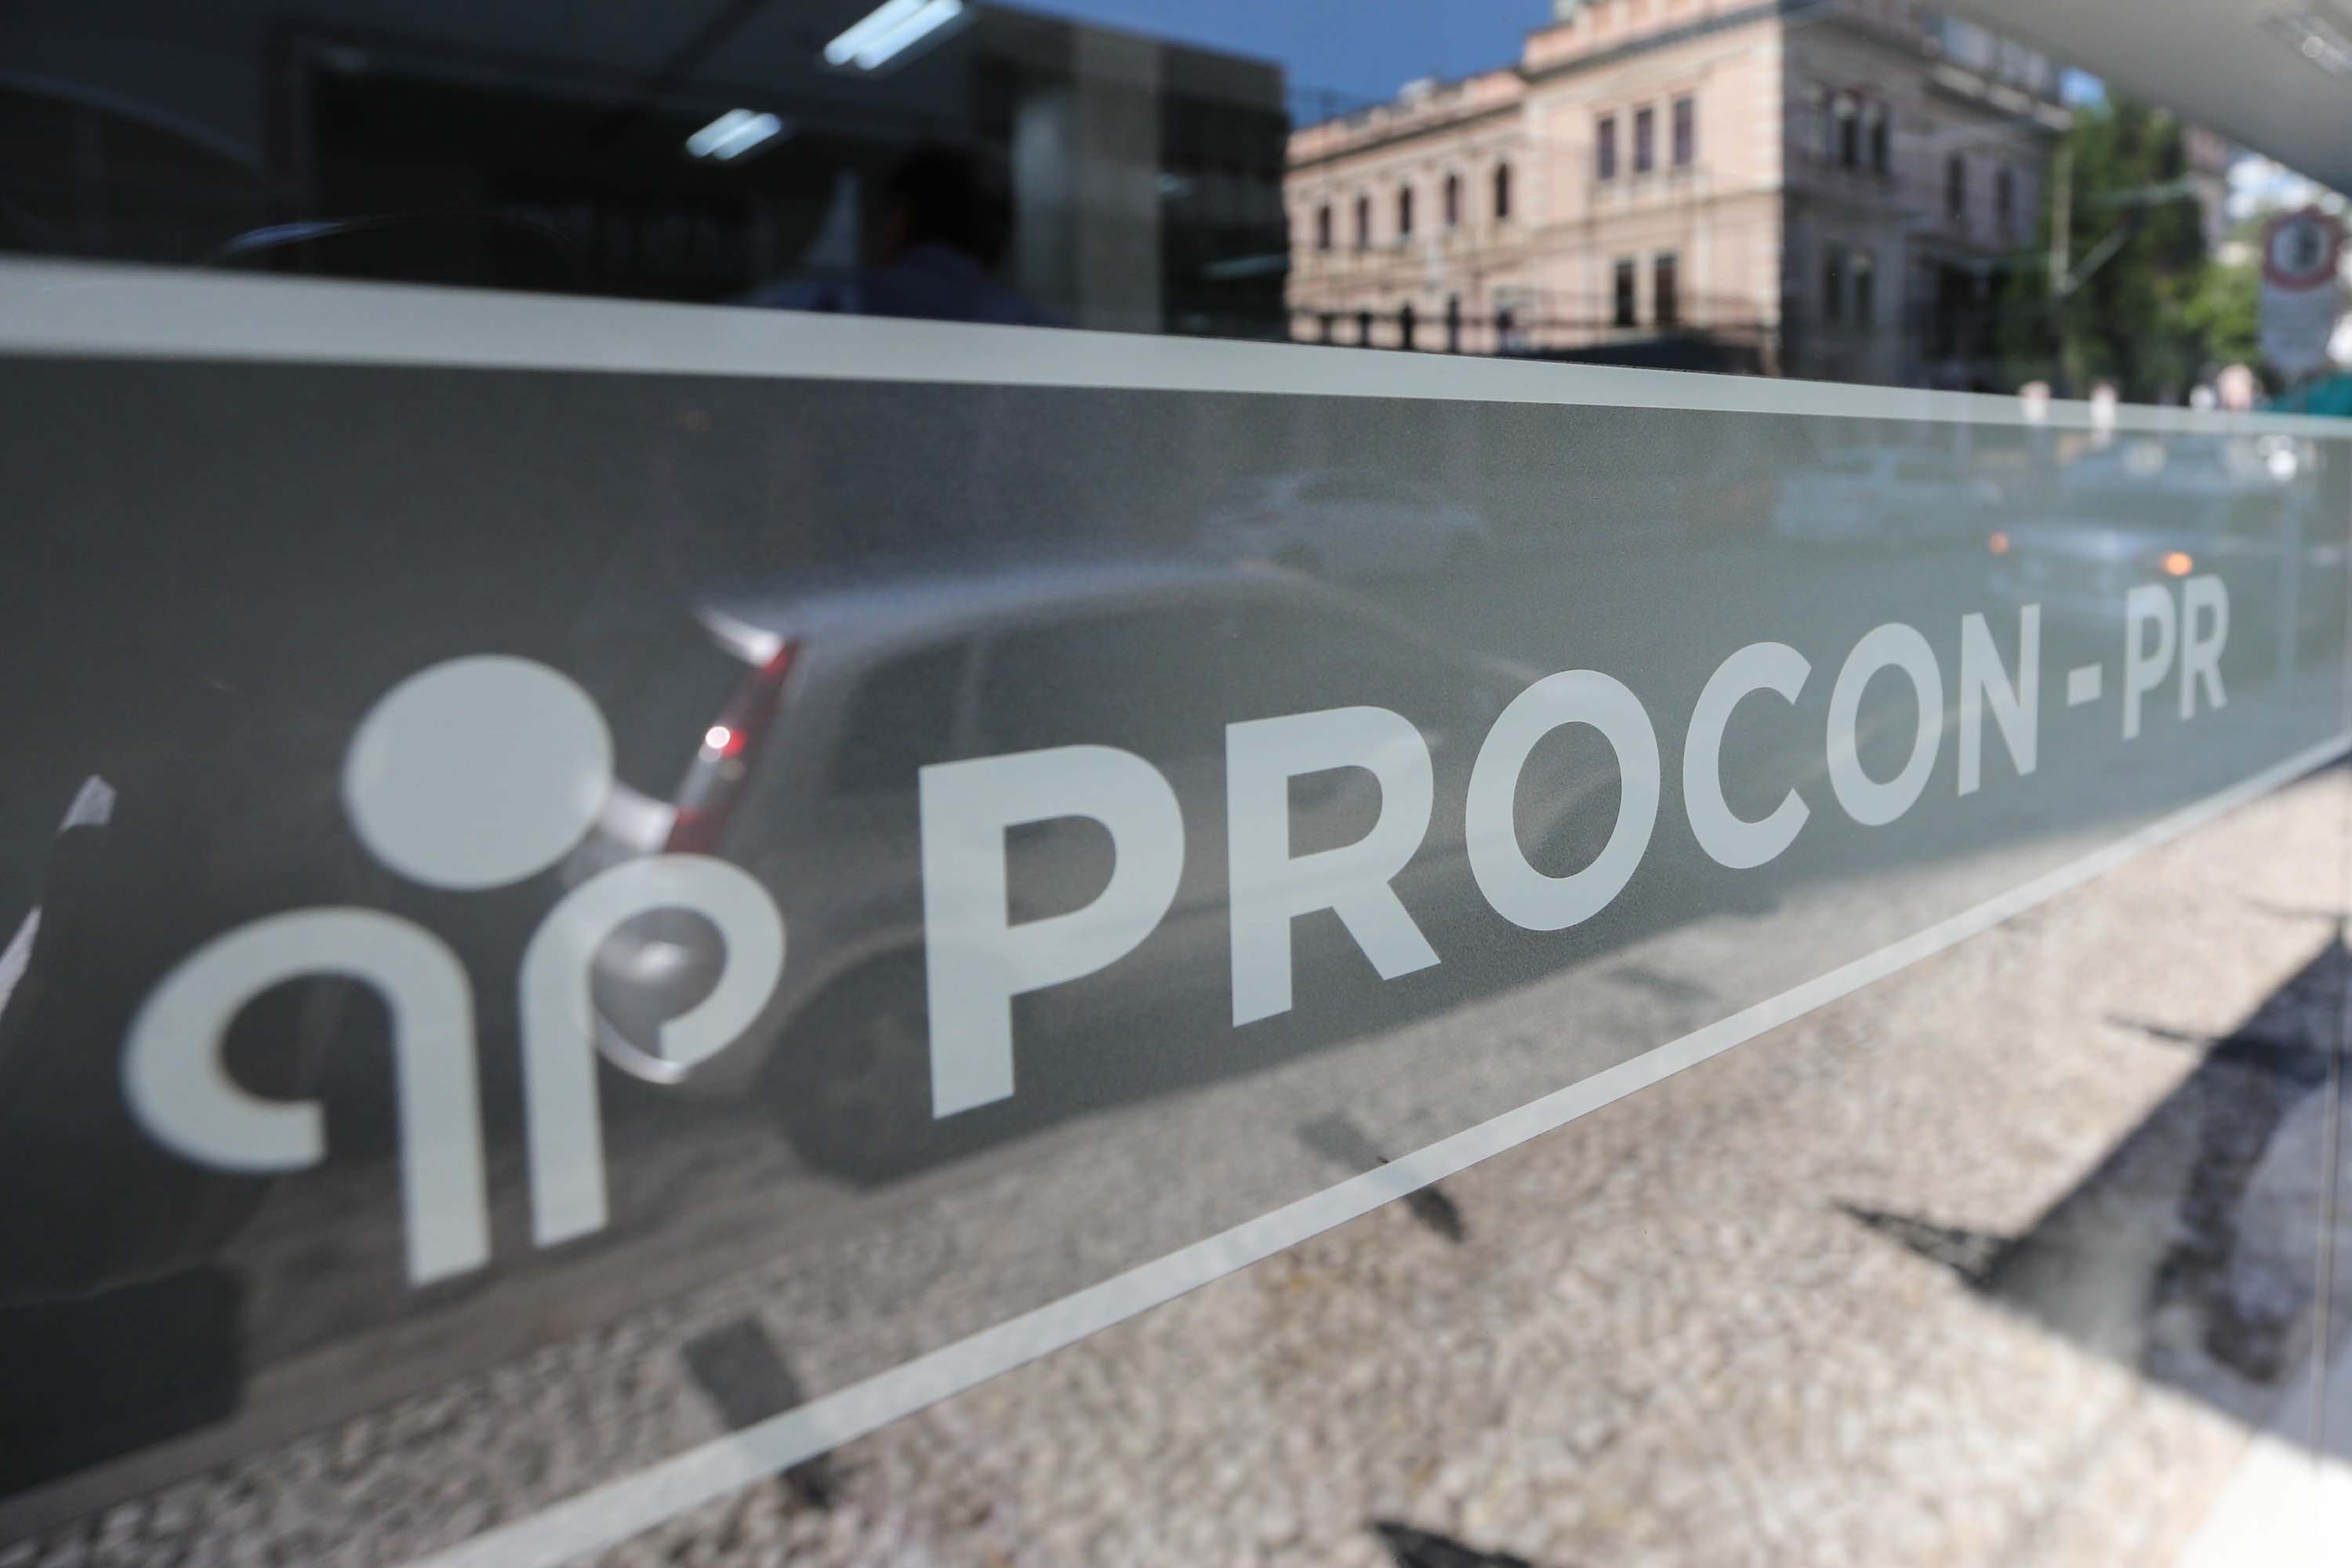  	Em quatro anos, ações do Procon-PR geram R$ 10 milhões em multas revertidos ao consumidor